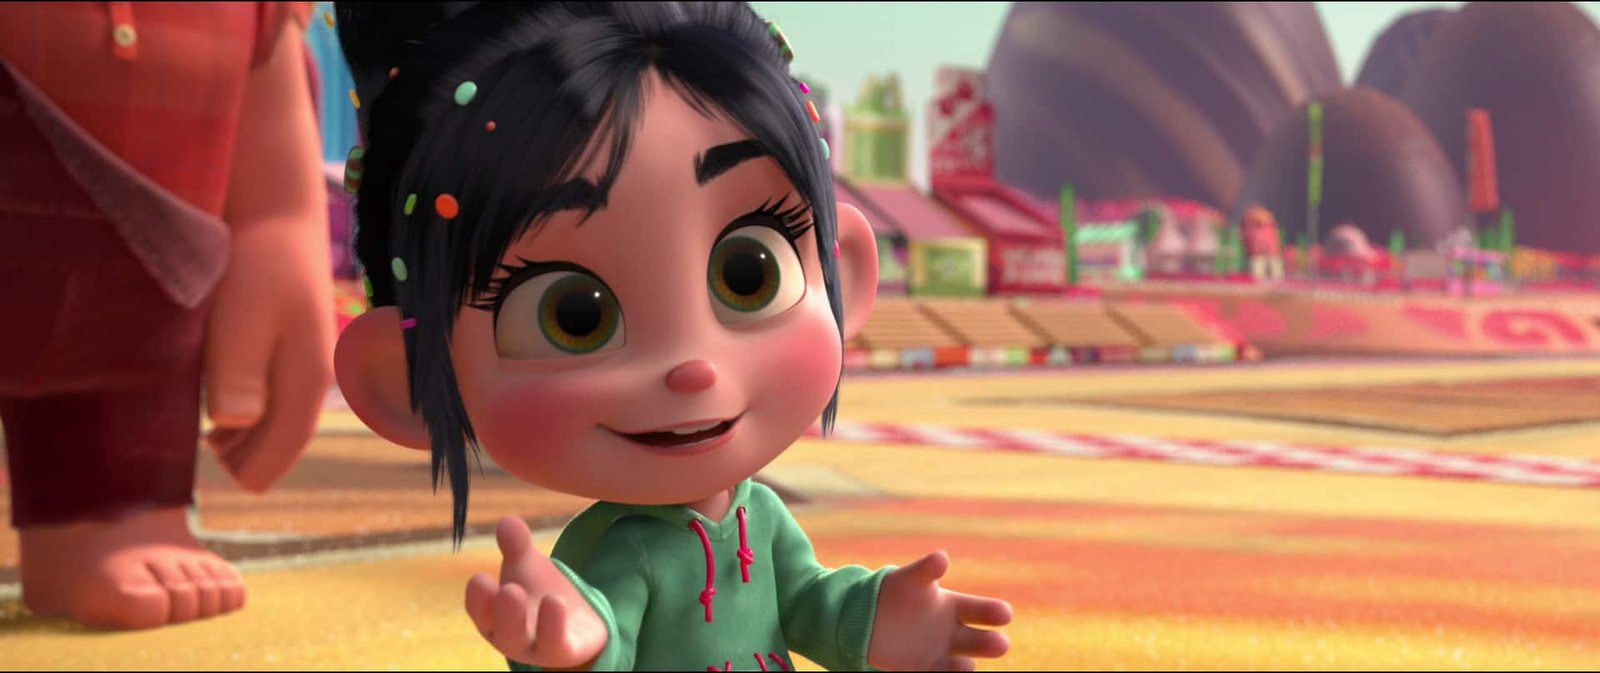 Personnage animé, une jeune fille aux cheveux foncés et à capuche verte, debout avec une expression enjouée et les mains tendues dans un environnement coloré sur le thème de Disney.